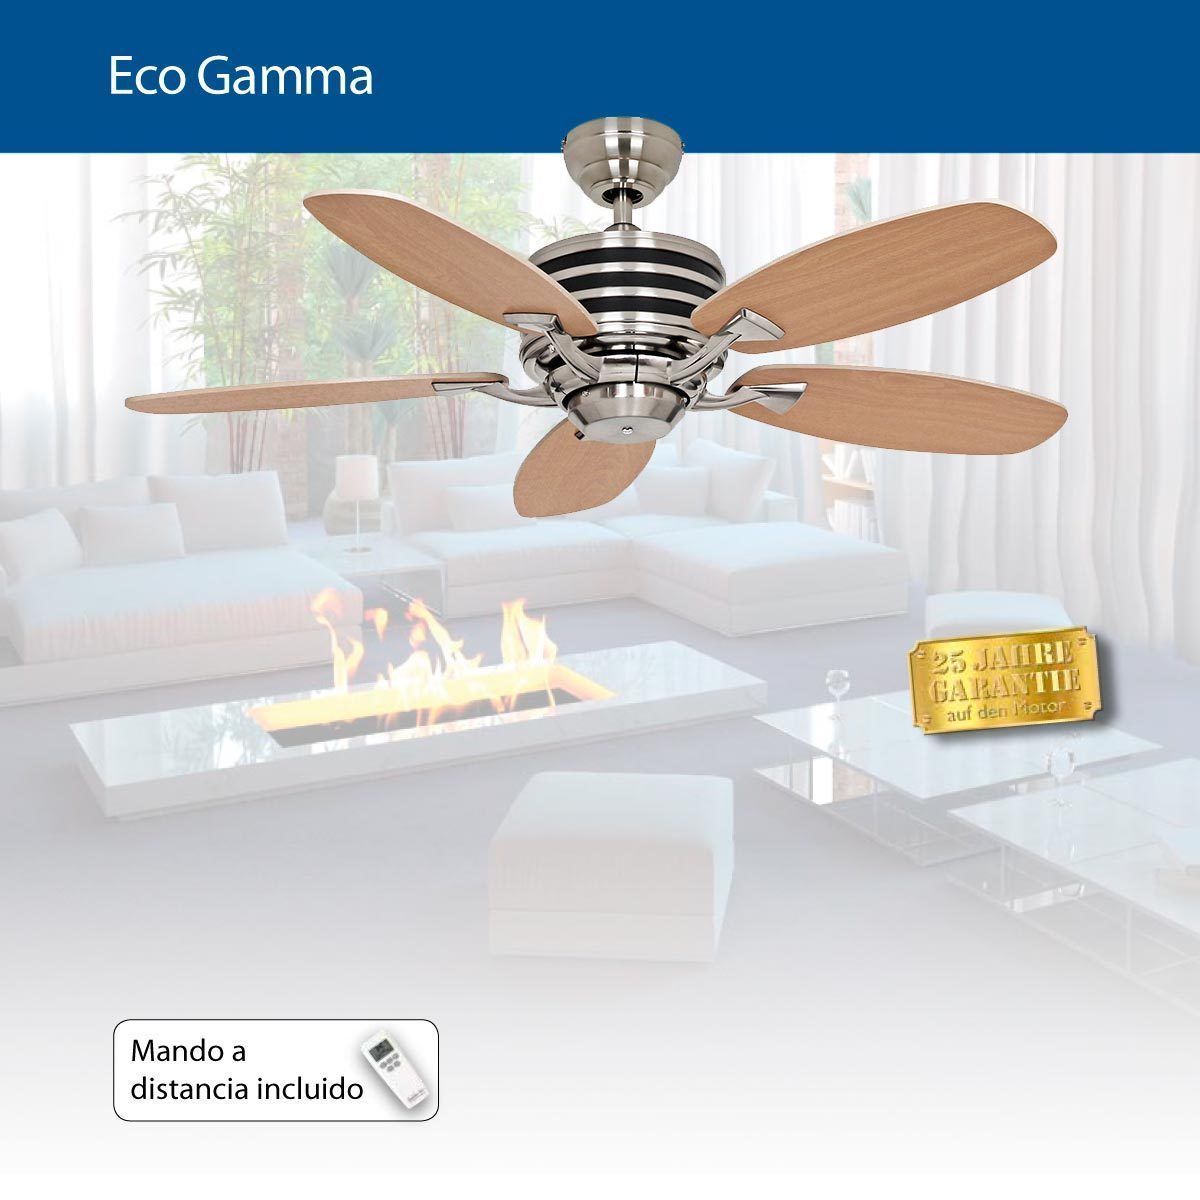 Ventilateur De Plafond Moderne Eco Gamma, 103 Cm Hetre- Erable Telecommande Ultra Economique